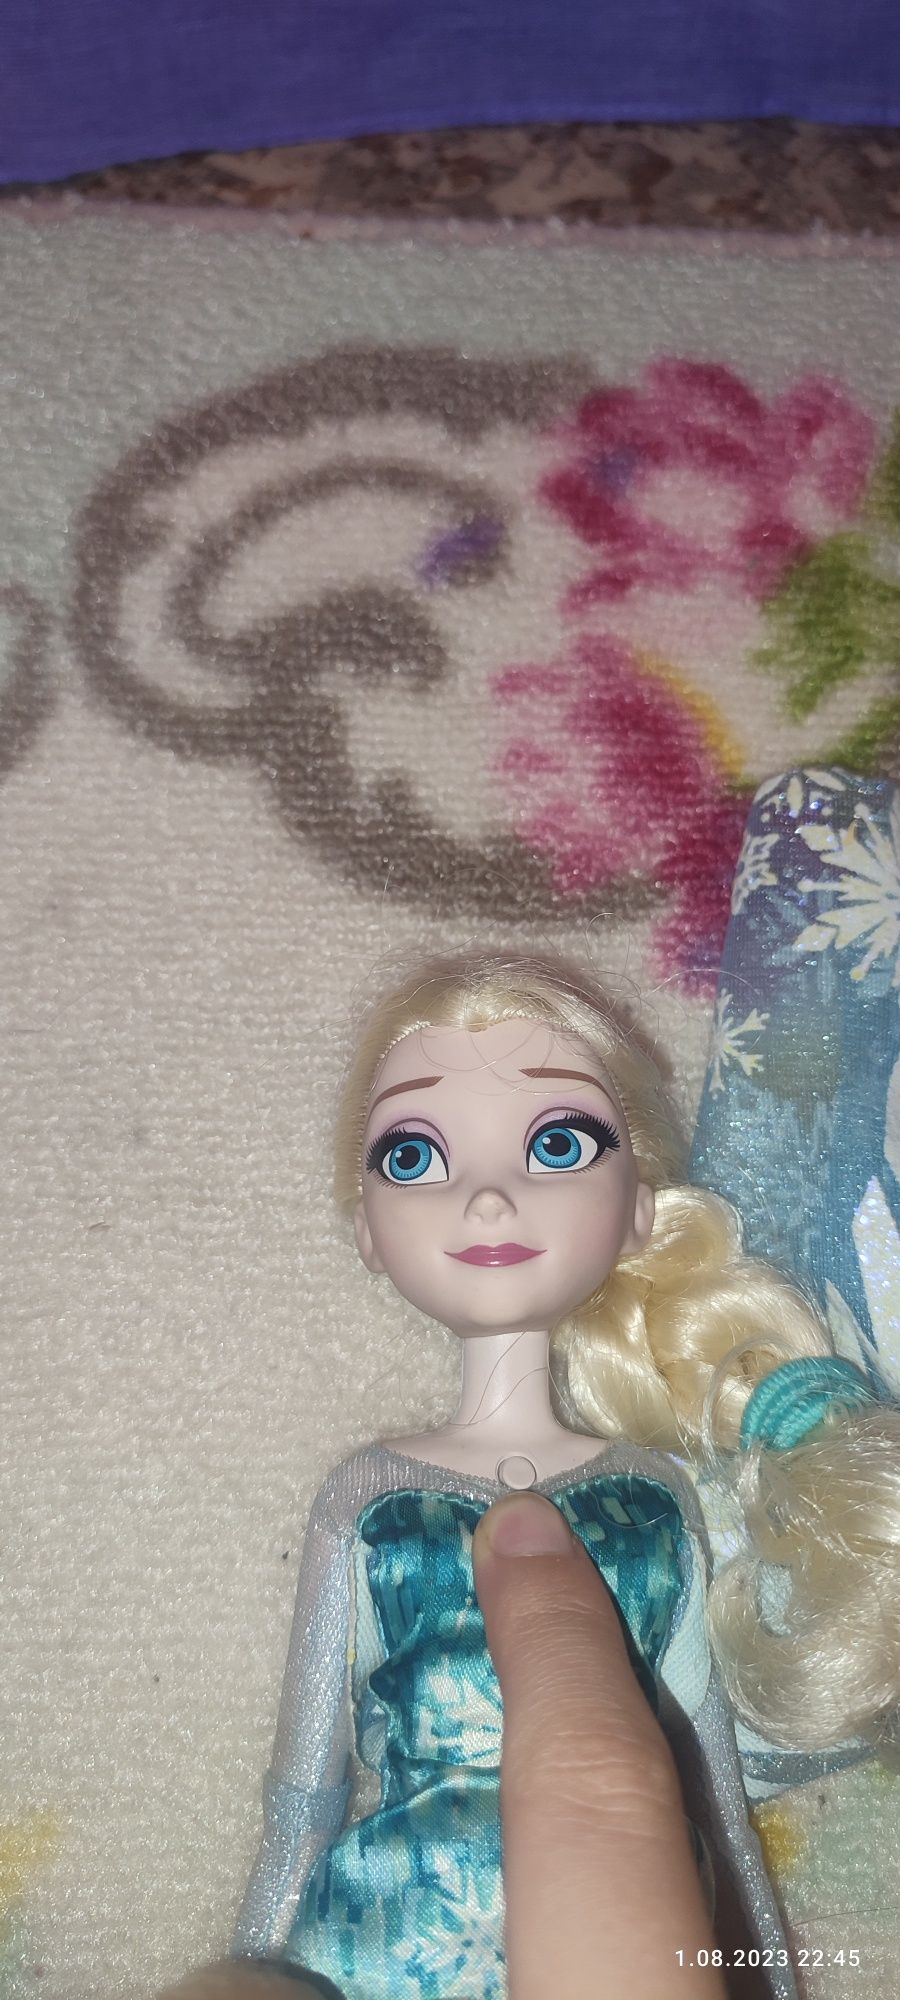 Kraina Lodu, Rozświetlona Elsa pianinko , lalka interaktywna

Kraina